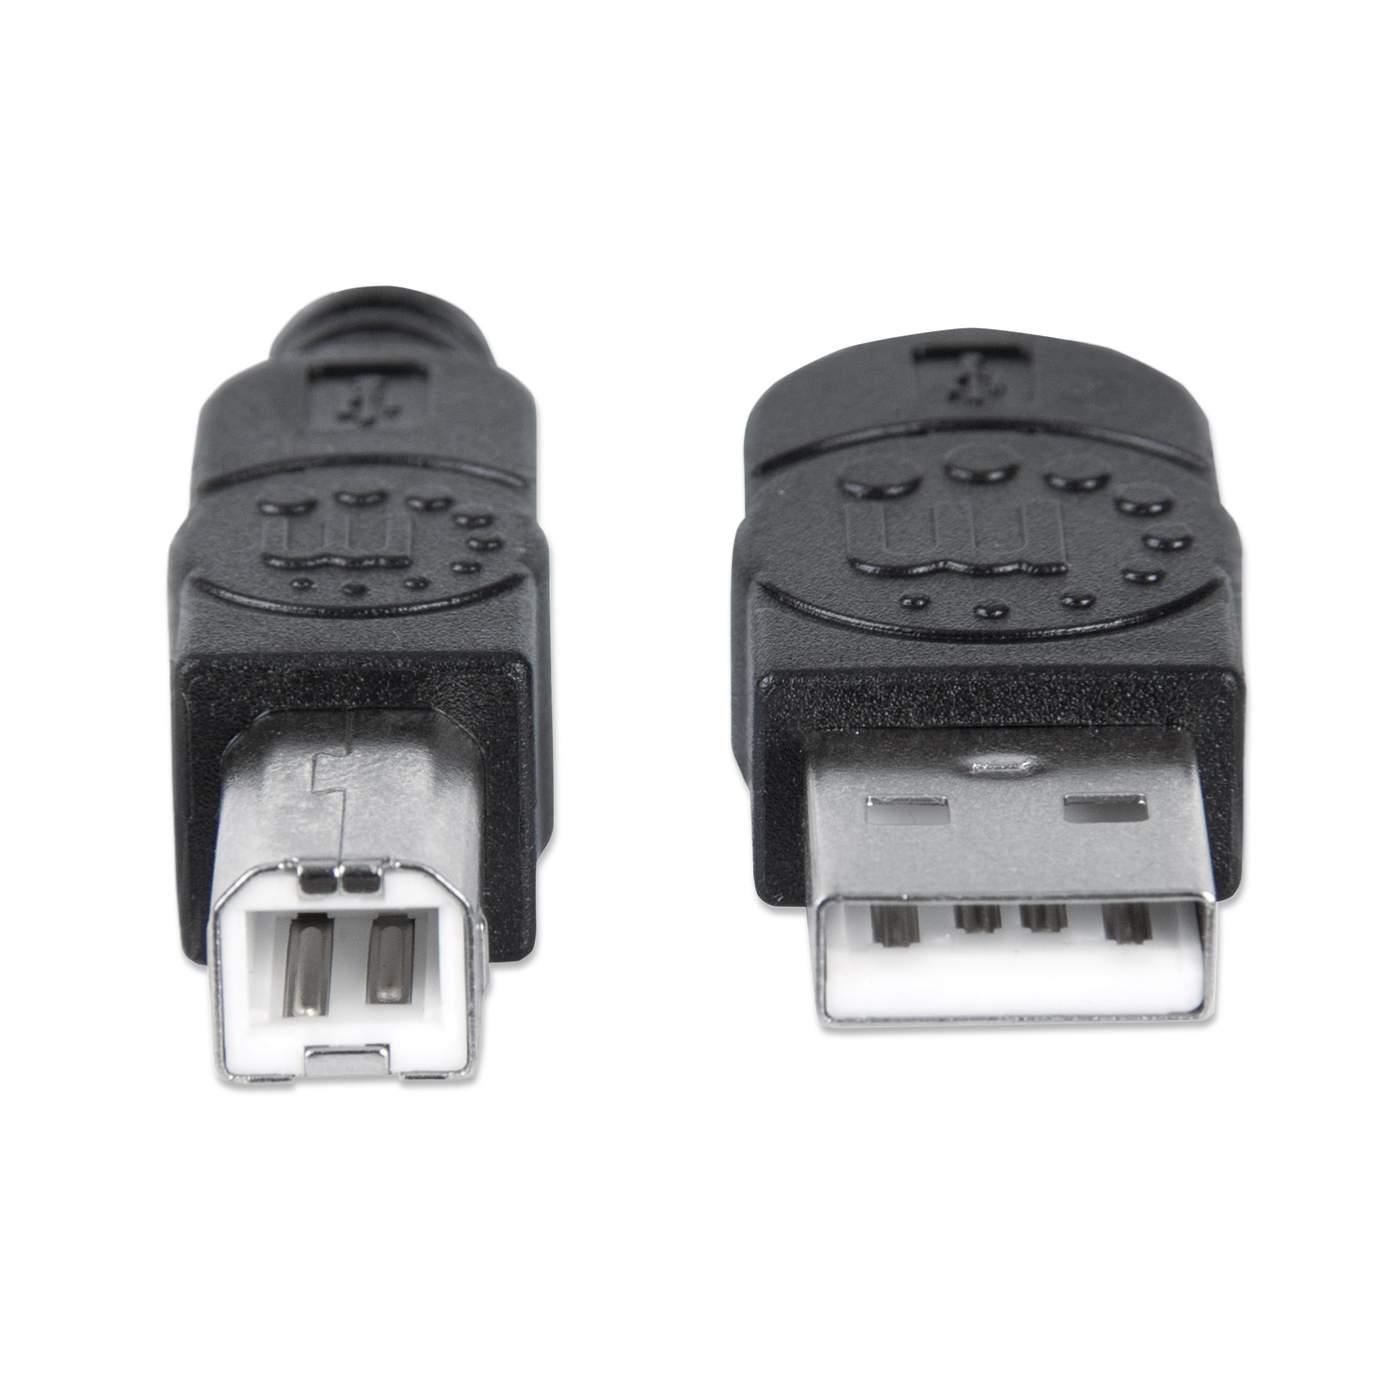 USB/Firewire - Câbles - Achat / Vente USB/Firewire - Câbles 